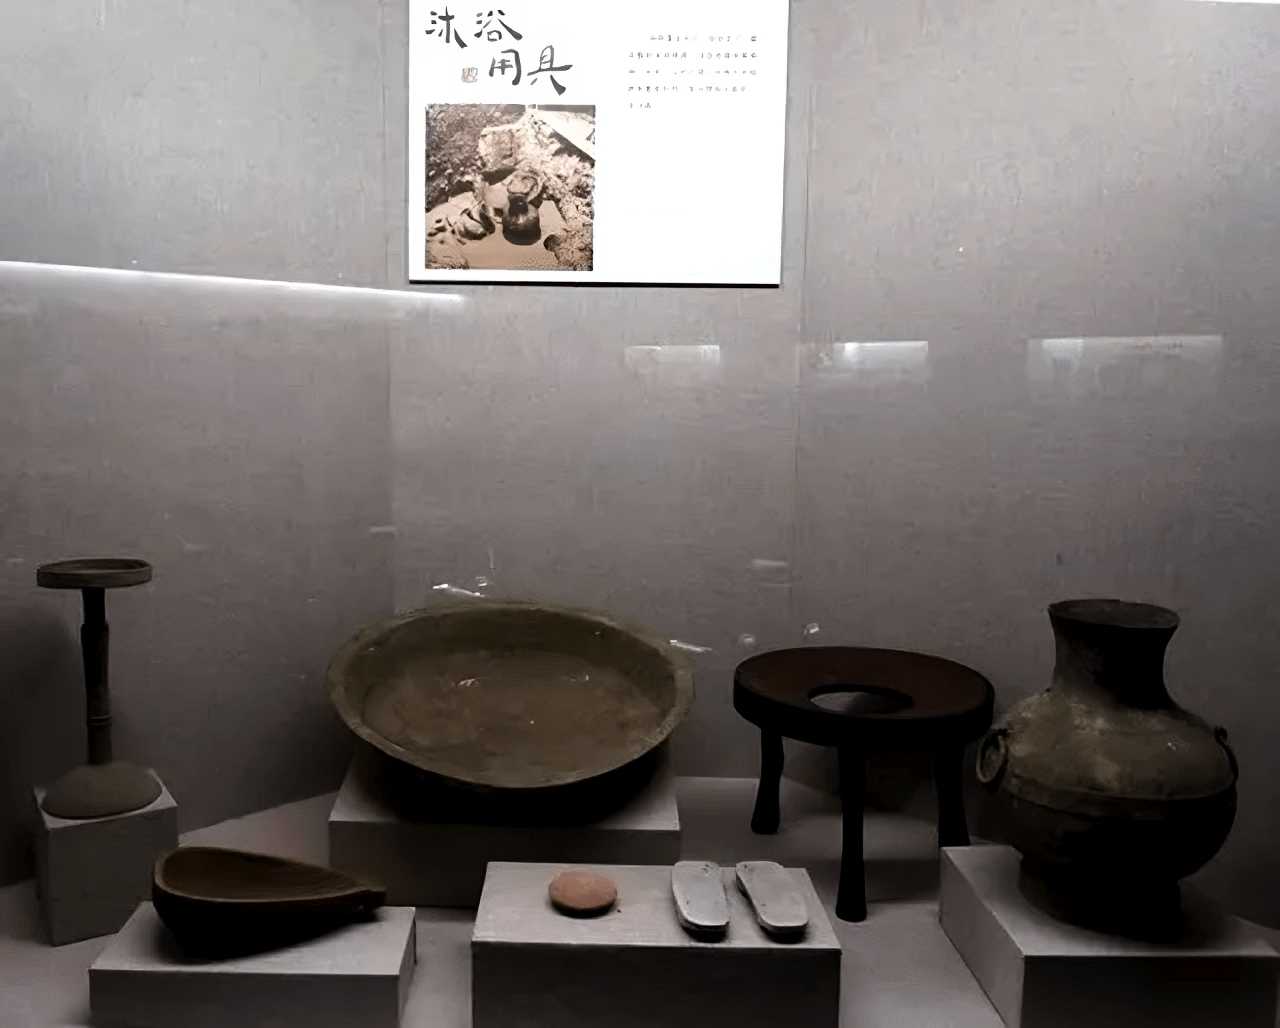 Han Hanedanı Çinlileri tarafından 2.000 yıl önce kullanılan banyo aletleri ve aksesuarları.